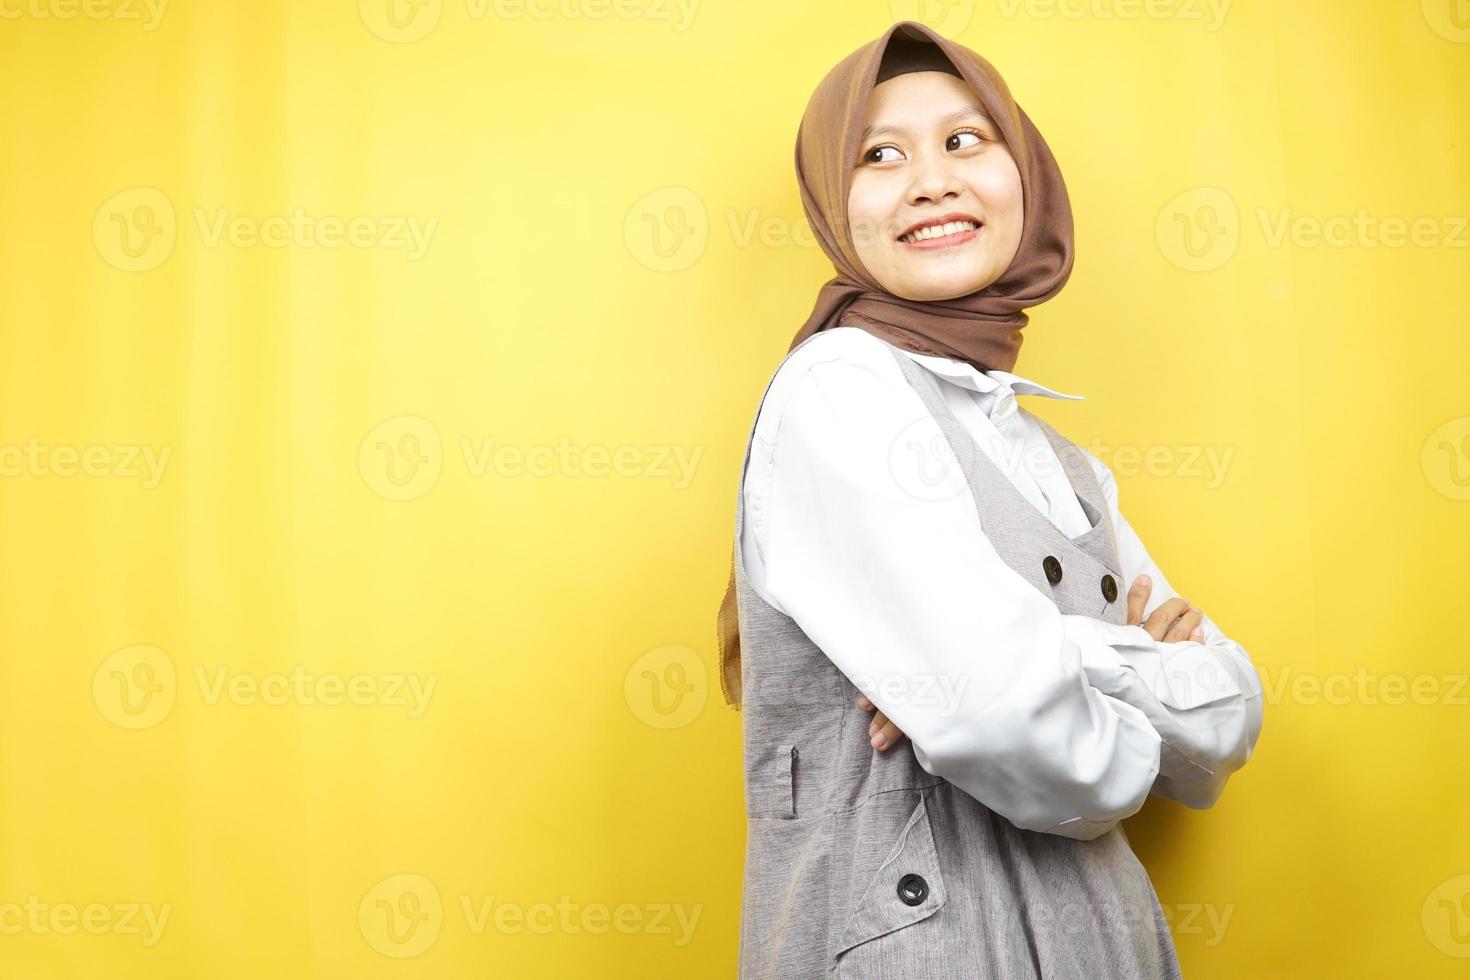 mooie jonge aziatische moslimvrouw zelfverzekerd en vrolijk ogende lege ruimte die iets presenteert, geïsoleerd op gele achtergrond foto